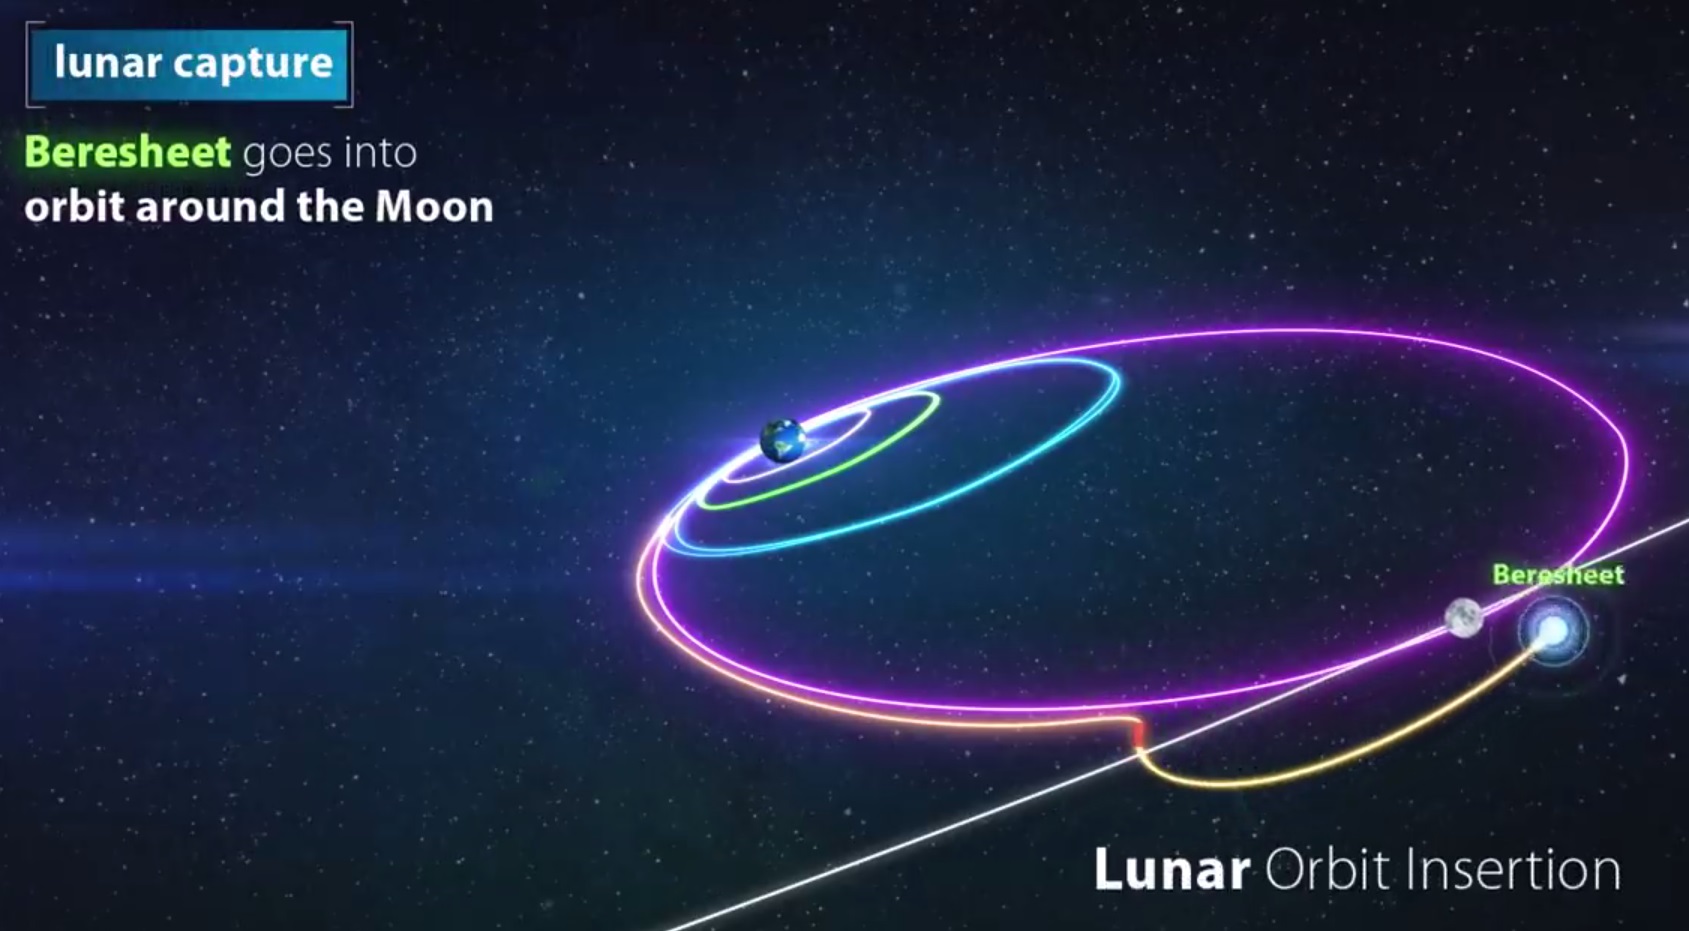 Лунная миссия «Берешит» — 4 апреля 2019 совершен переход на лунную орбиту, впереди 7 дней полета, 6 маневров и 1 посадка - 50